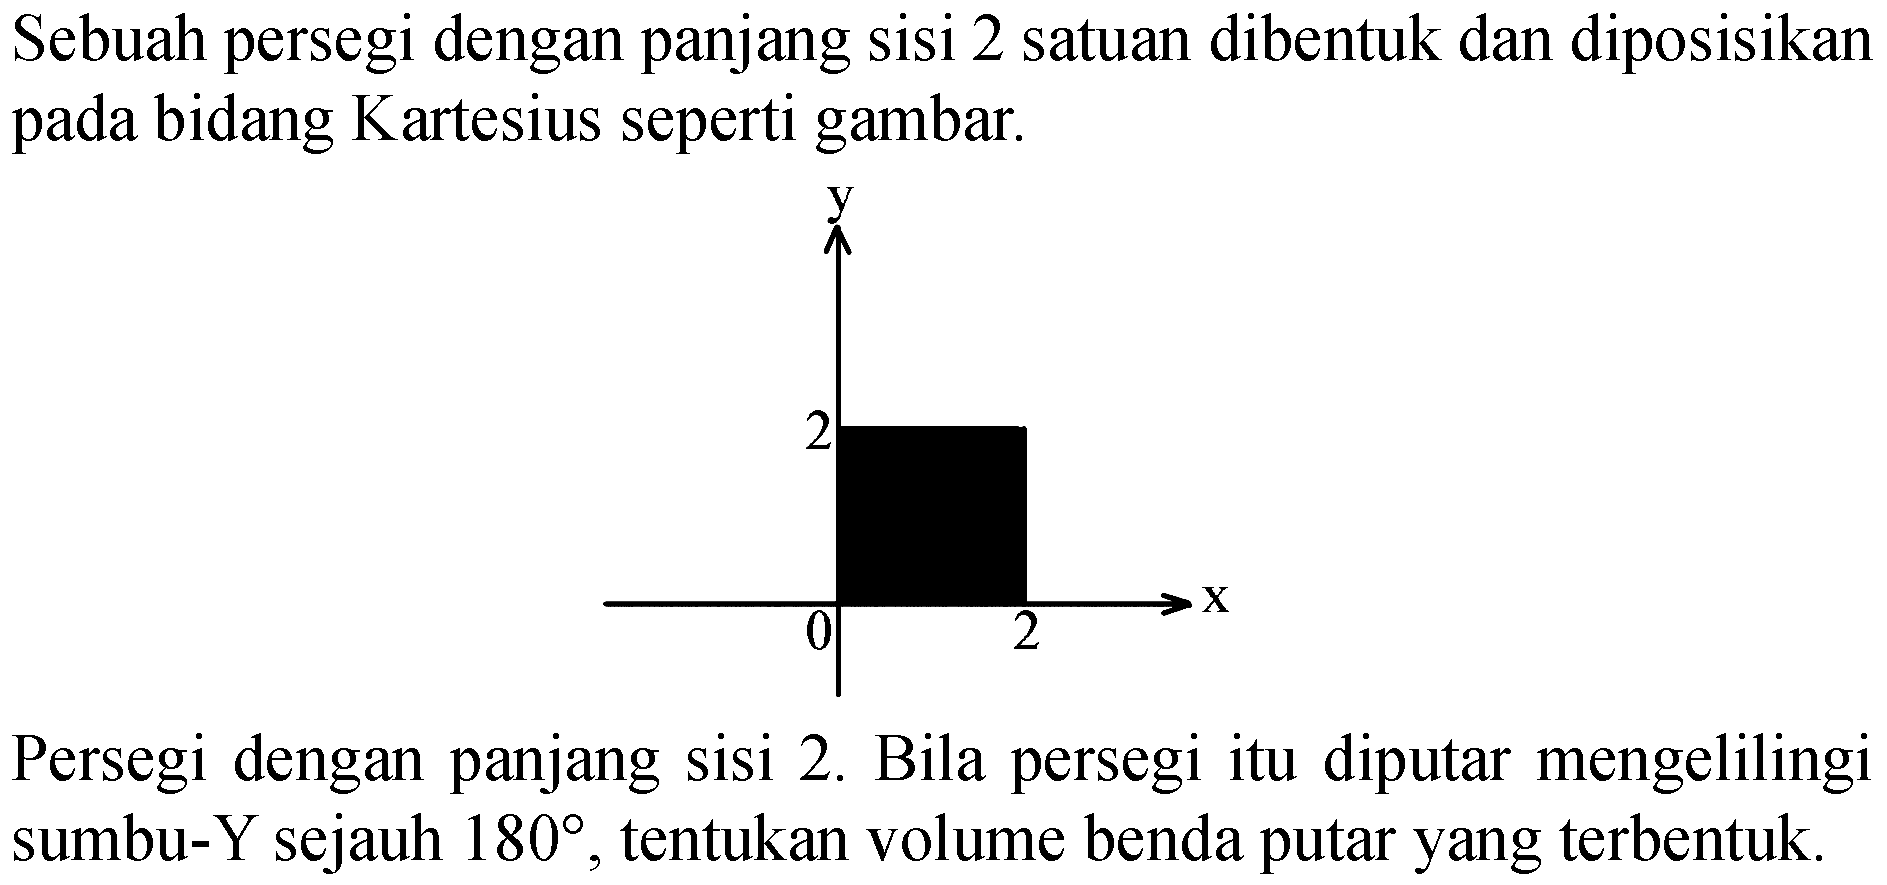 Sebuah persegi dengan panjang sisi 2 satuan dibentuk dan diposisikan pada bidang Kartesius seperti gambar.
y 2 0 2 x

Persegi dengan panjang sisi  2 .  Bila persegi itu diputar mengelilingi sumbu-Y sejauh  180 , tentukan volume benda putar yang terbentuk.